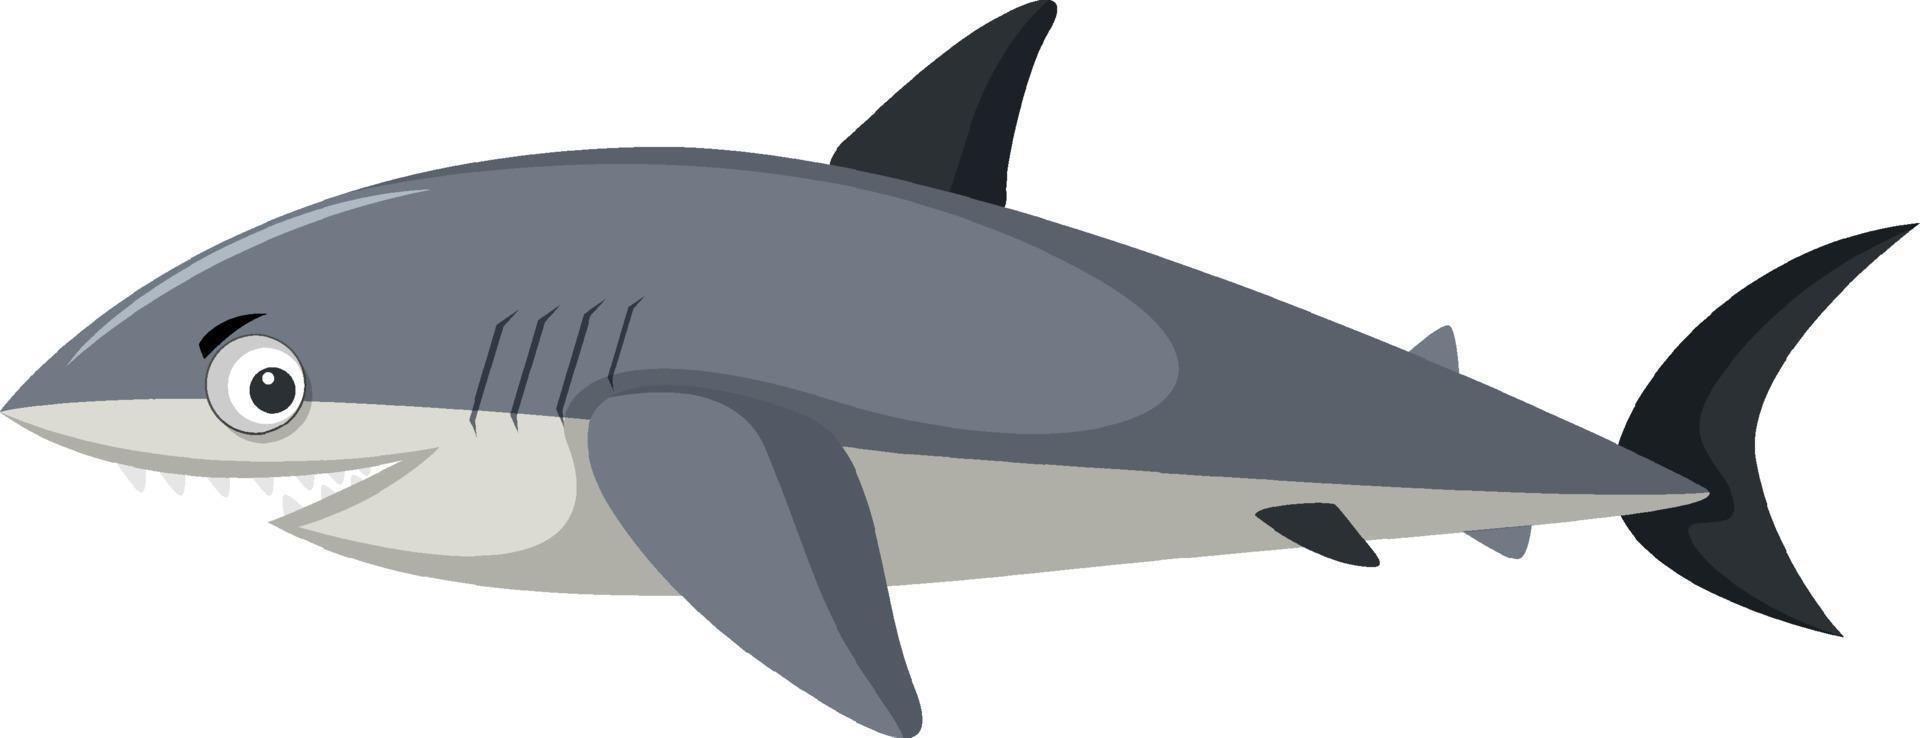 simpatico personaggio dei cartoni animati di squalo isolato vettore